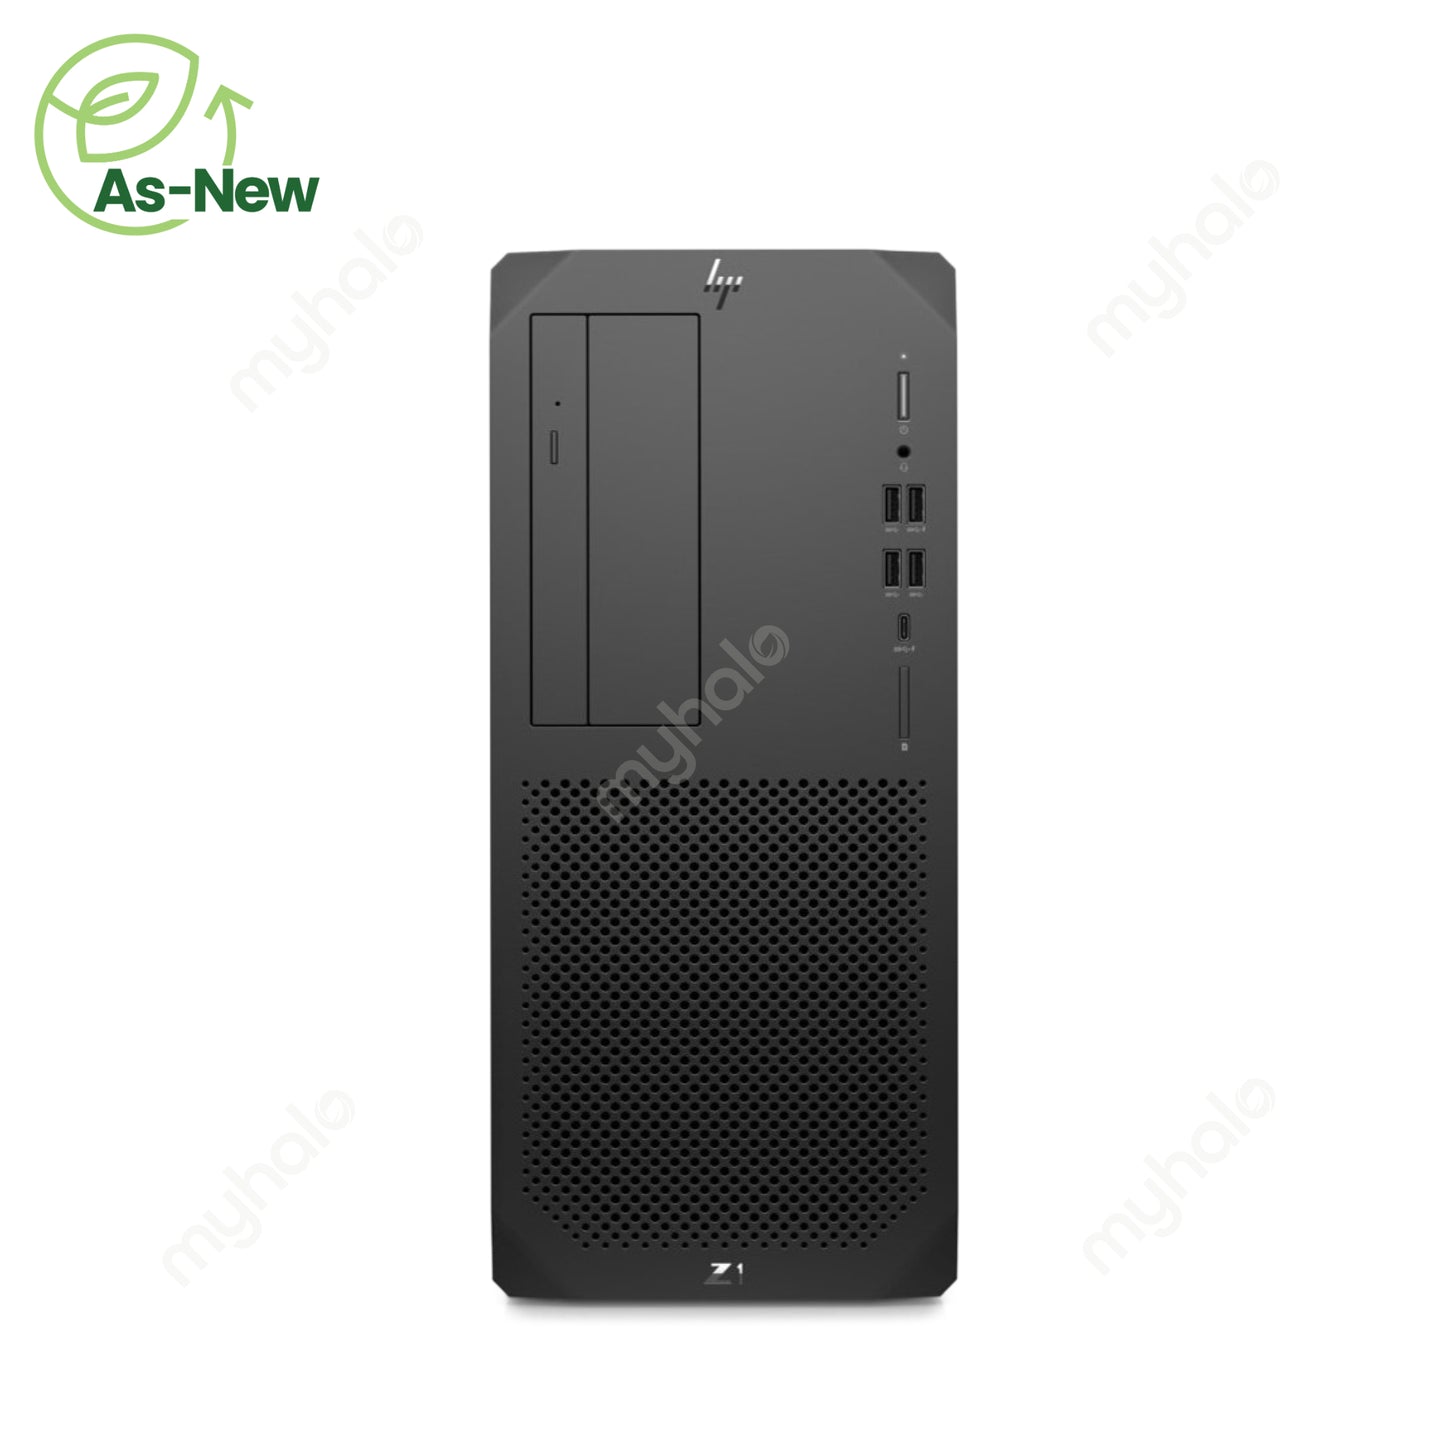 HP Z1 G6 Tower Workstation (8YH59AV) (i7-10 / 16GB / 512GB / RTX2060)